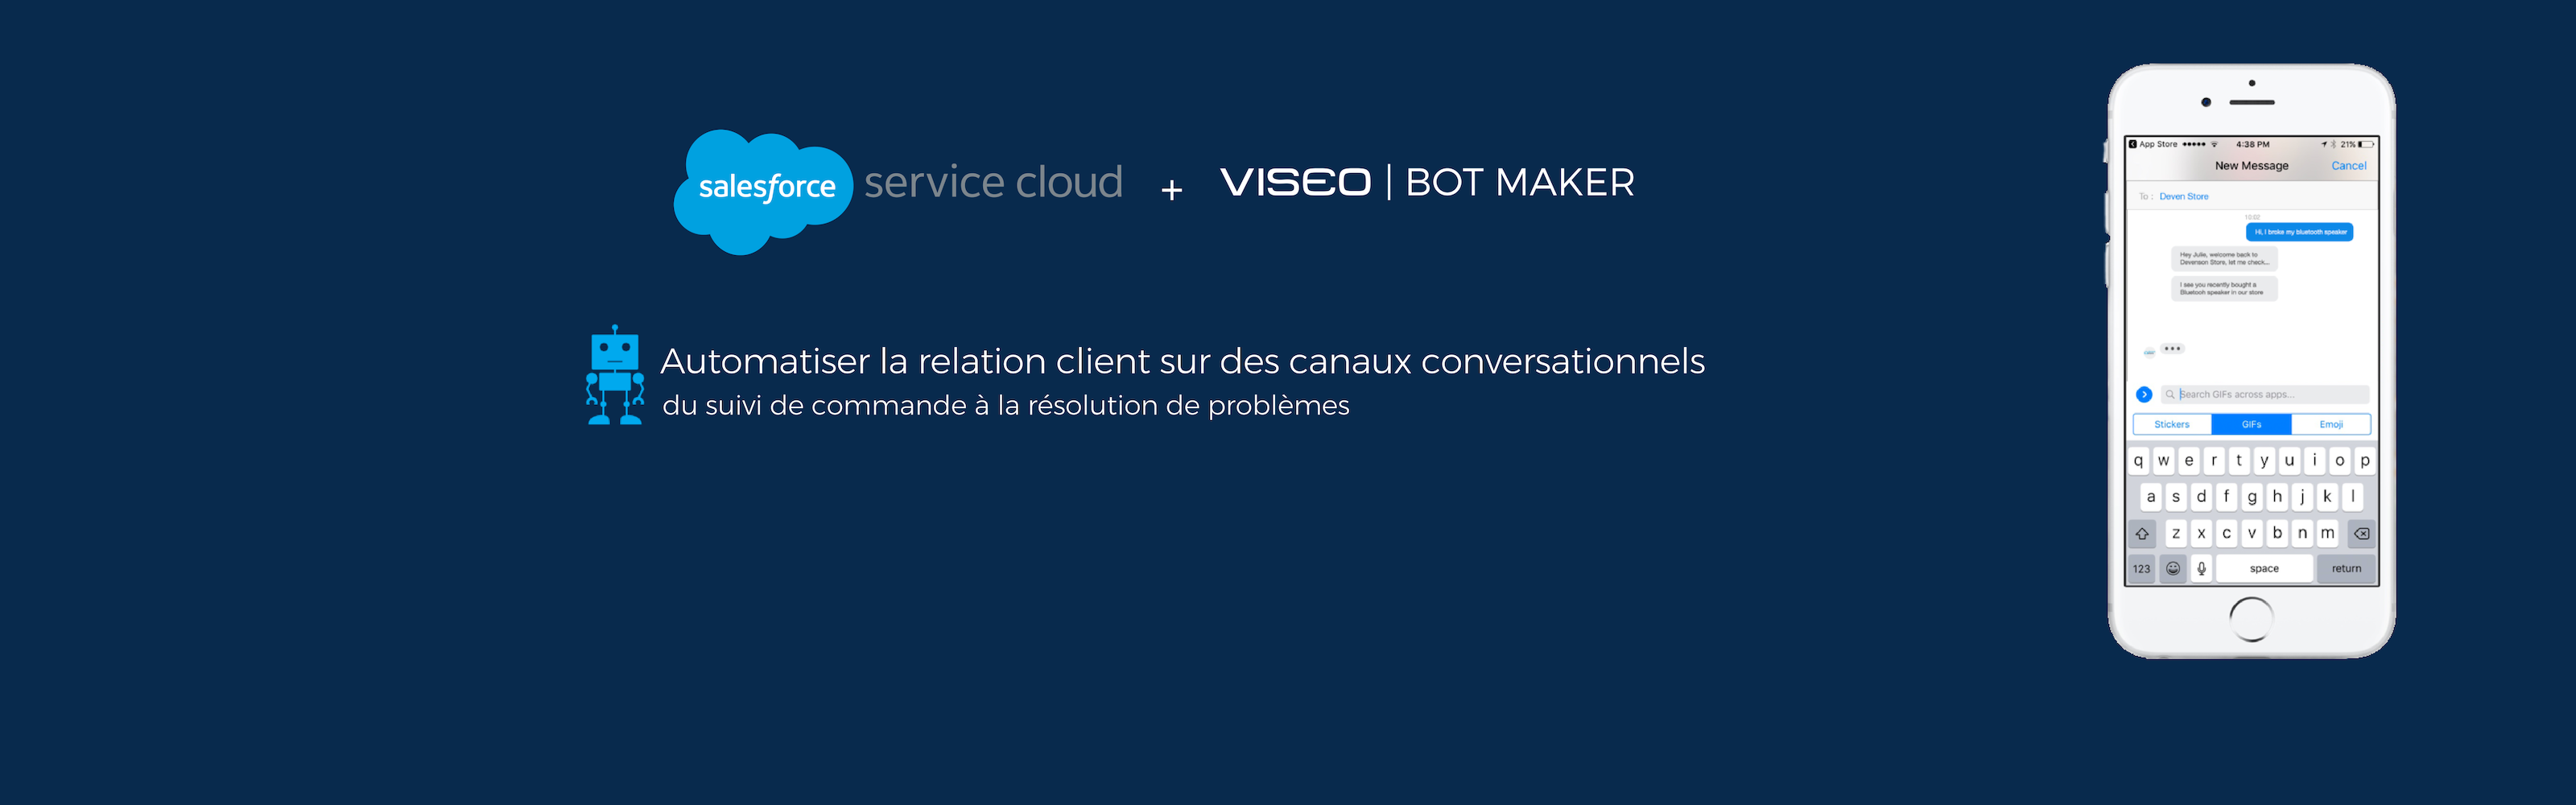 Les équipes Salesforce & Innovation de VISEO connectent Salesforce Service Cloud aux assistants conversationnels